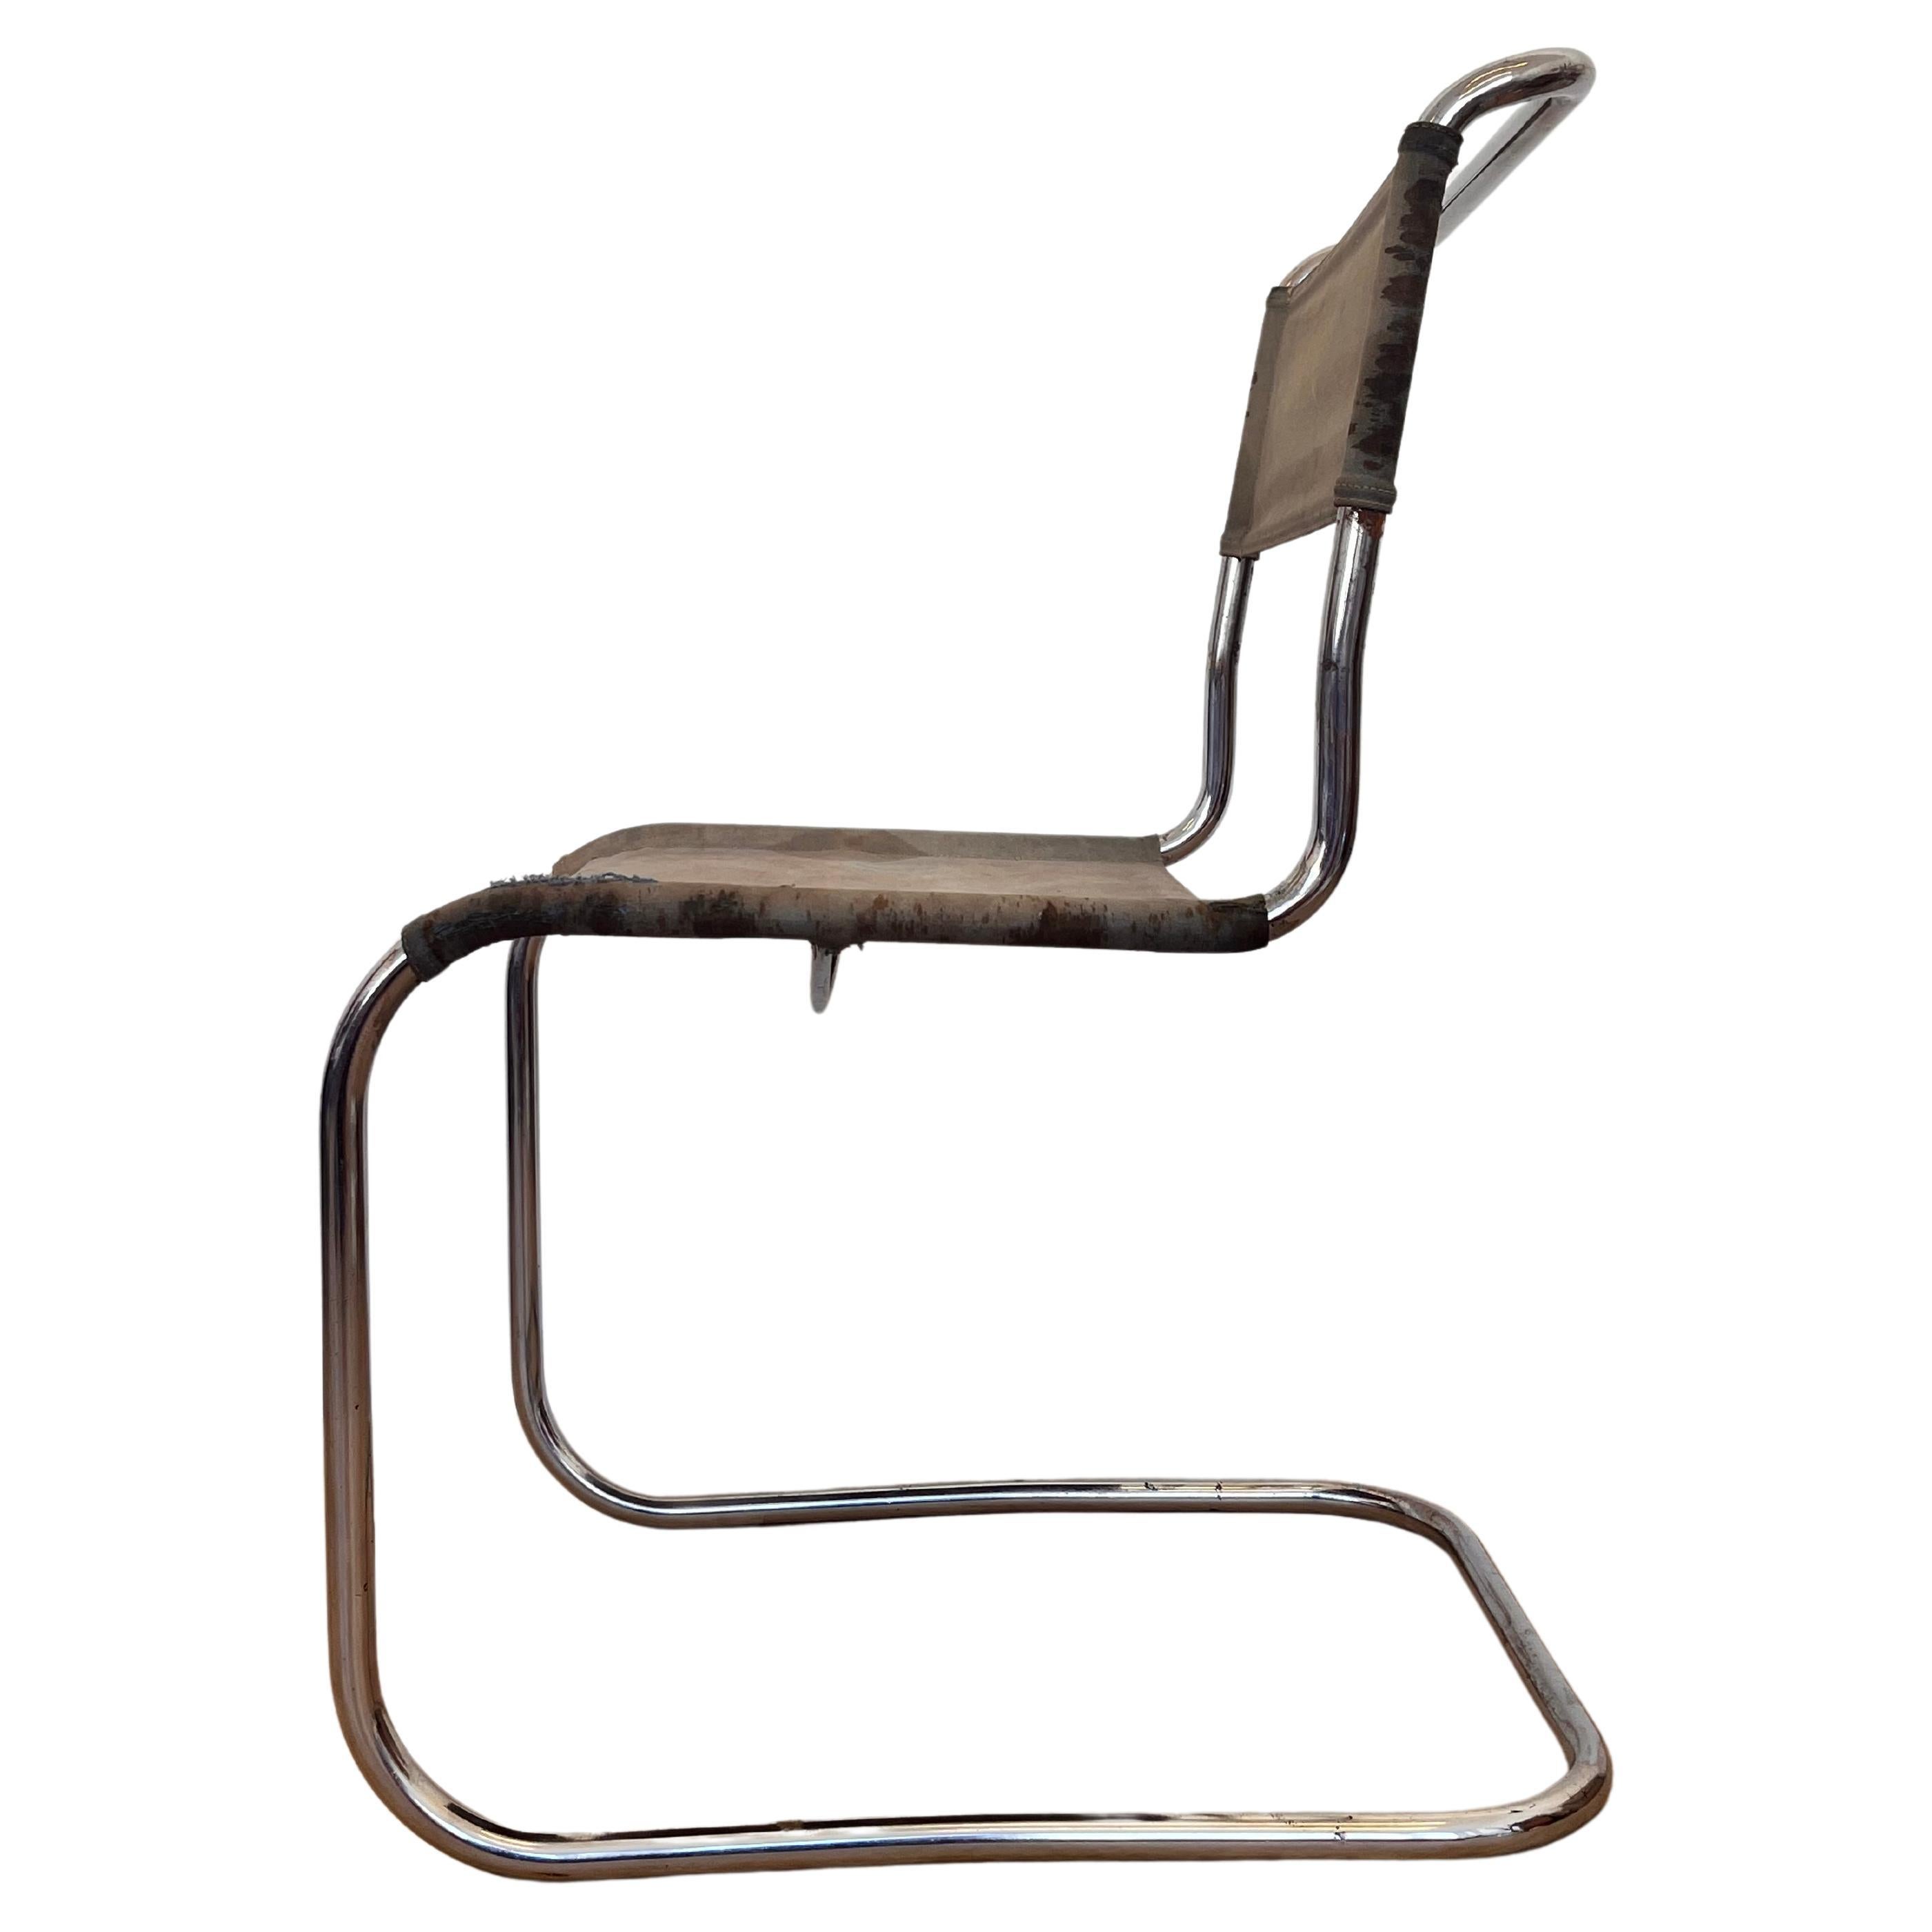 Bauhaus-Stuhl aus Stahlrohr und Chromrohr / THONET, Mart Stam, 1930 (Eisengarn)